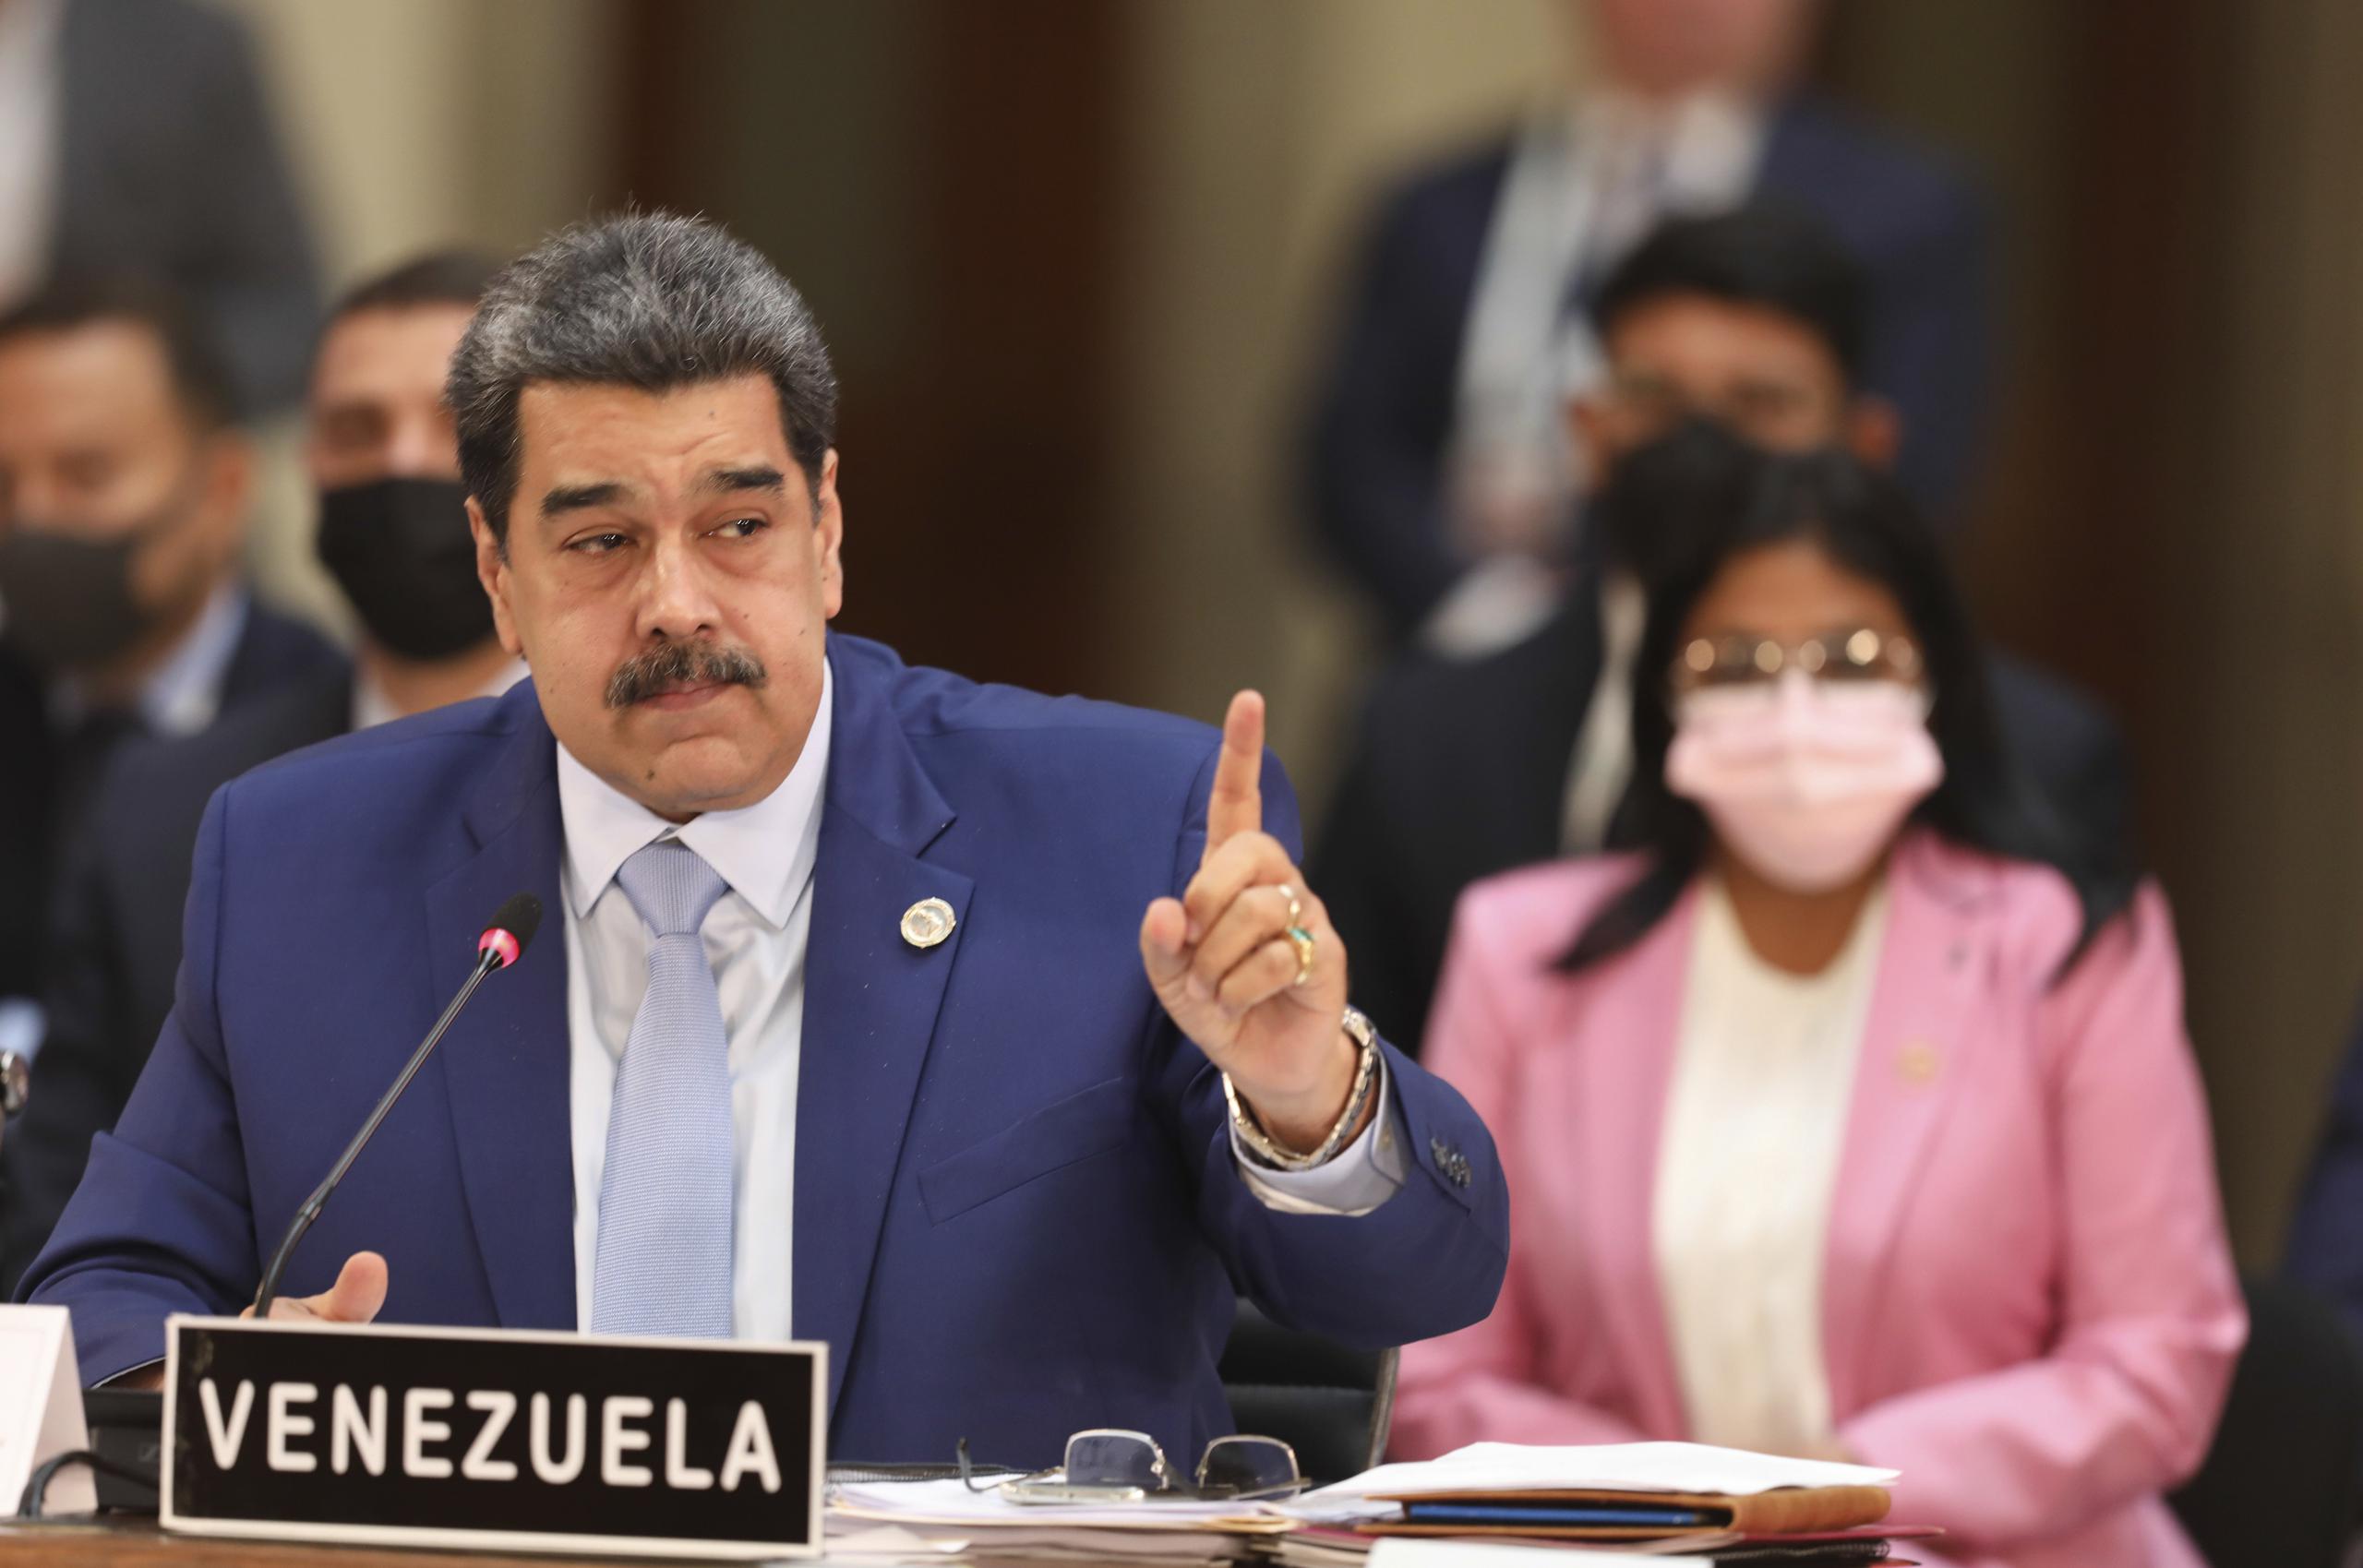 El presidente de Venezuela ha convocado un referéndum en el que le pide al pueblo respaldar el reclamo de que los terrenos al oeste del río Esequibo, ricos en petróleo y que están bajo el control de Guyana, pertenecen a Venezuela.